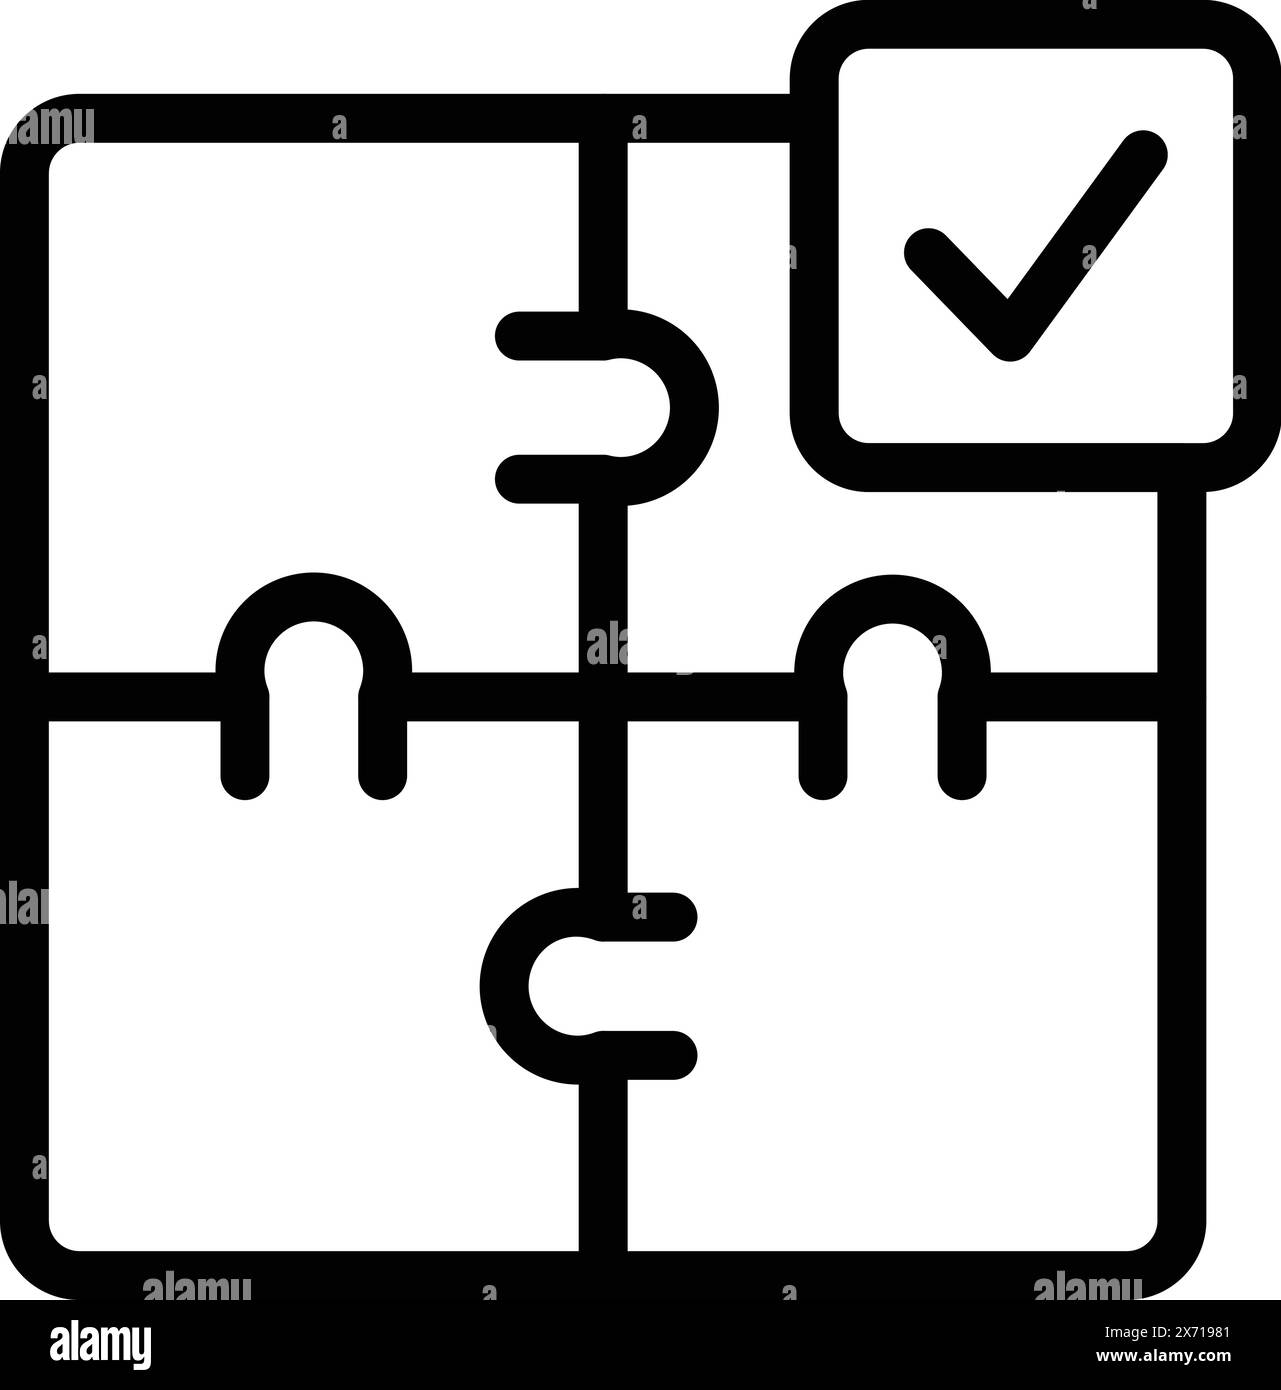 Schwarz-weiße Strichgrafik eines fertigen Puzzles mit einem Häkchen, das die Lösung oder den Erfolg symbolisiert Stock Vektor